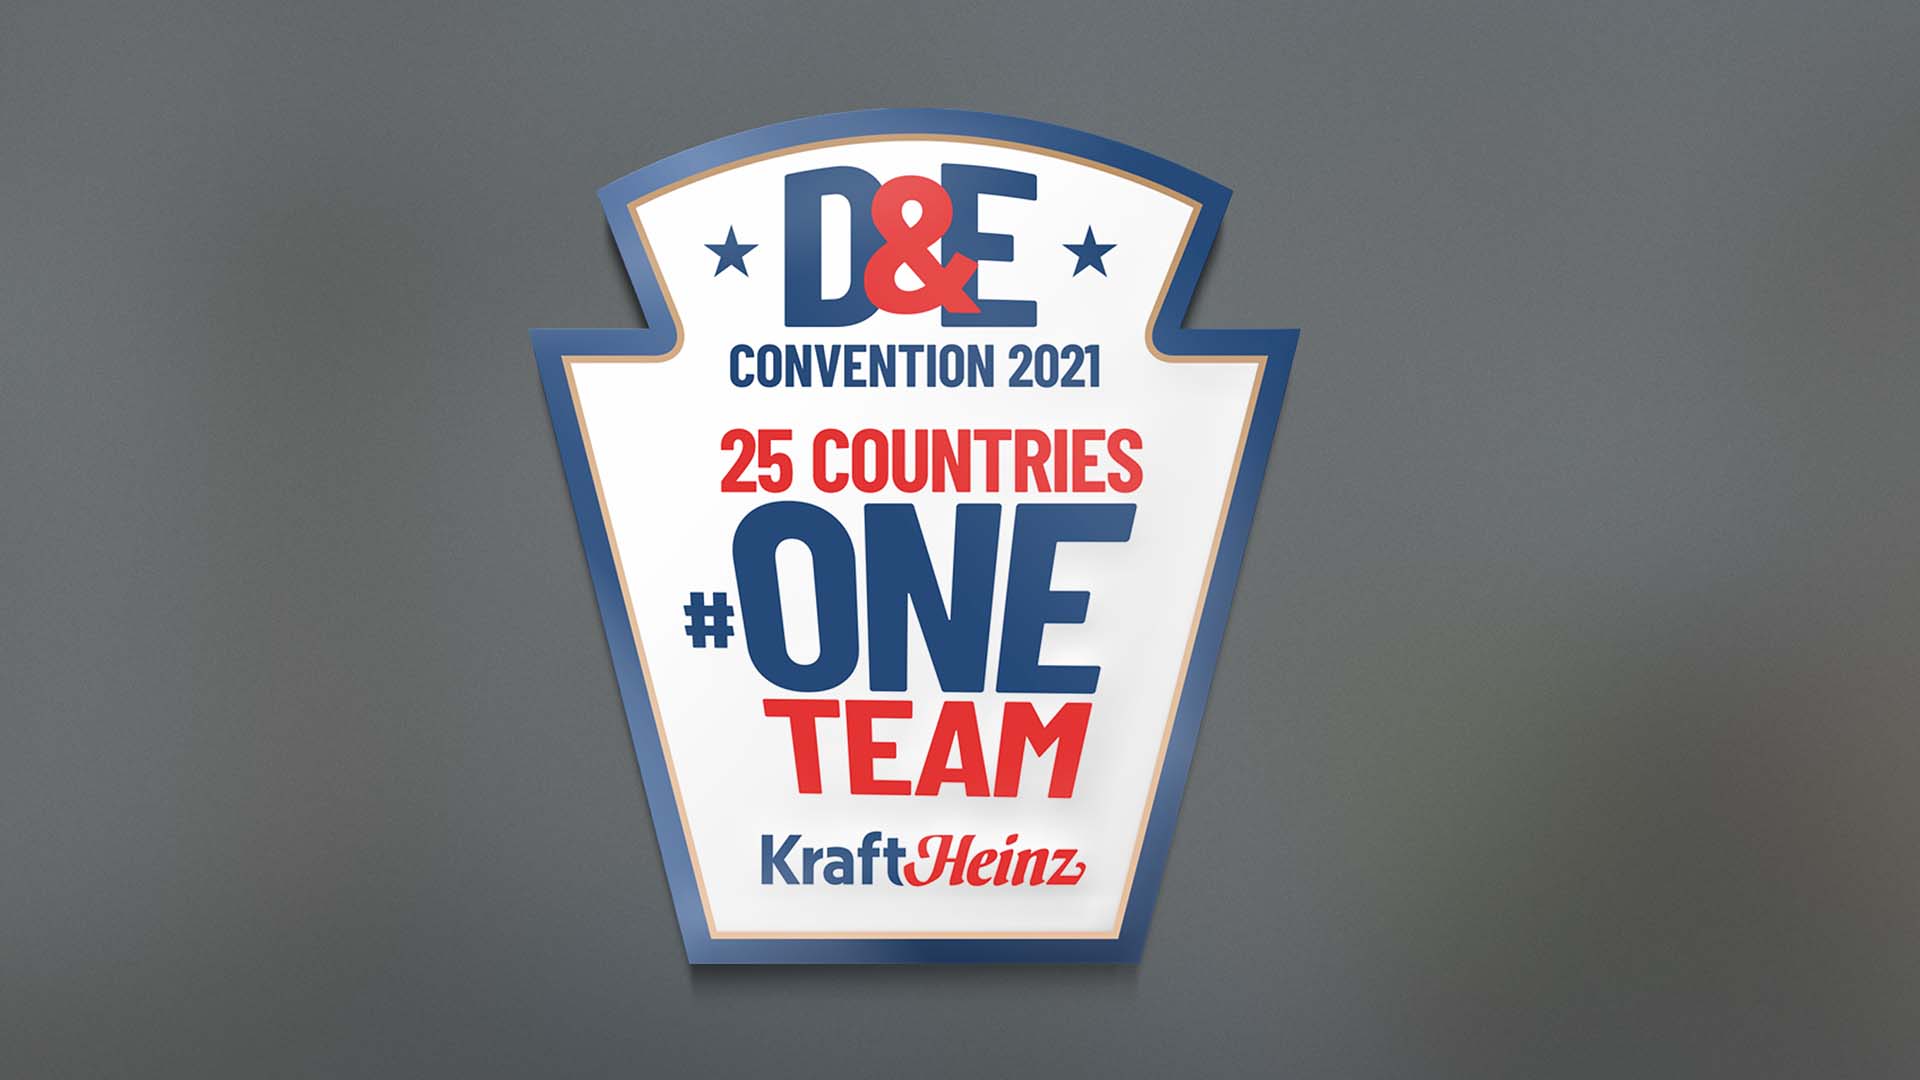 D&E Convention 2021 – KHC Holanda – Kraft Heinz